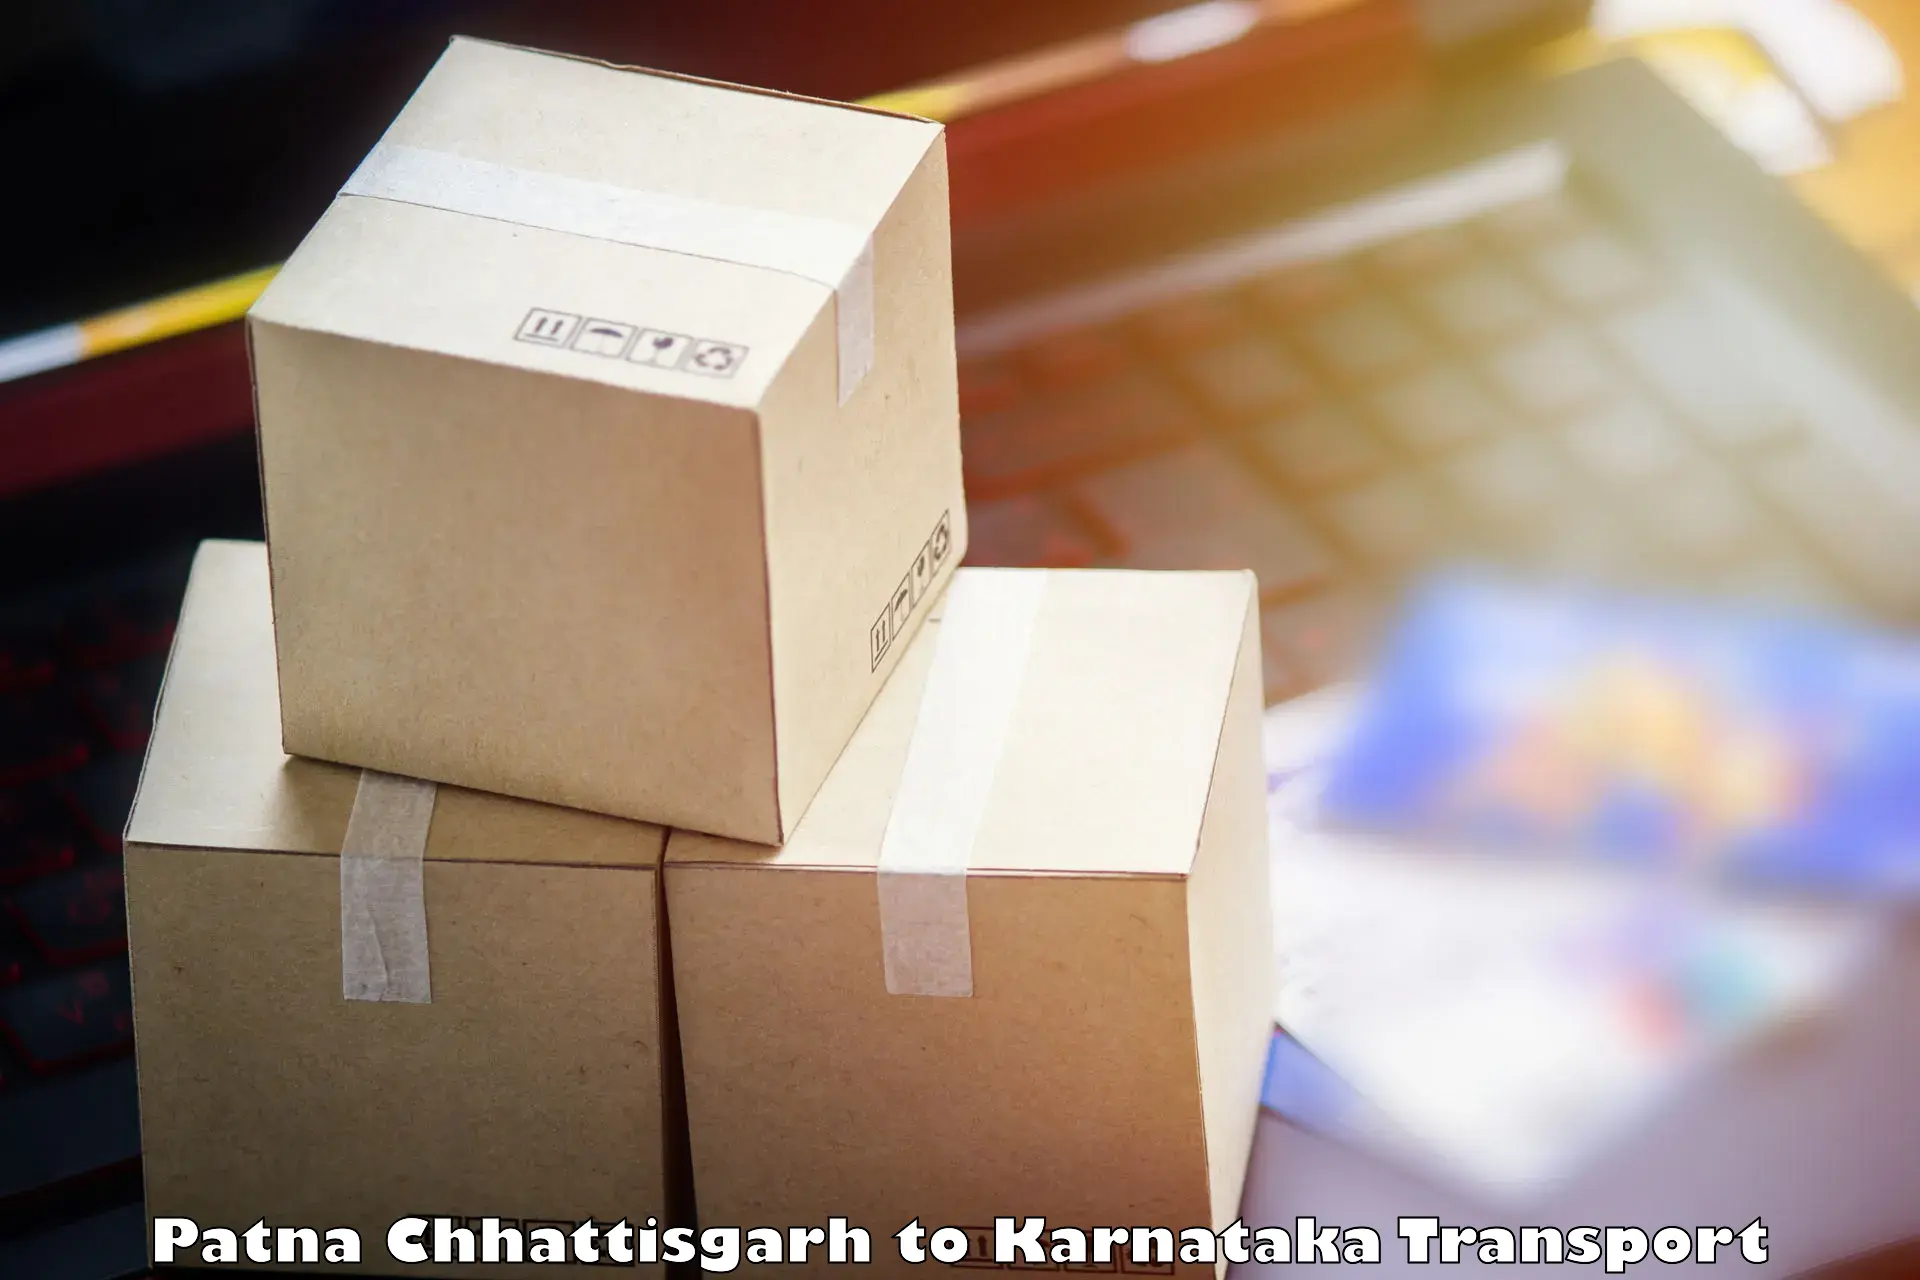 Delivery service Patna Chhattisgarh to Mysore